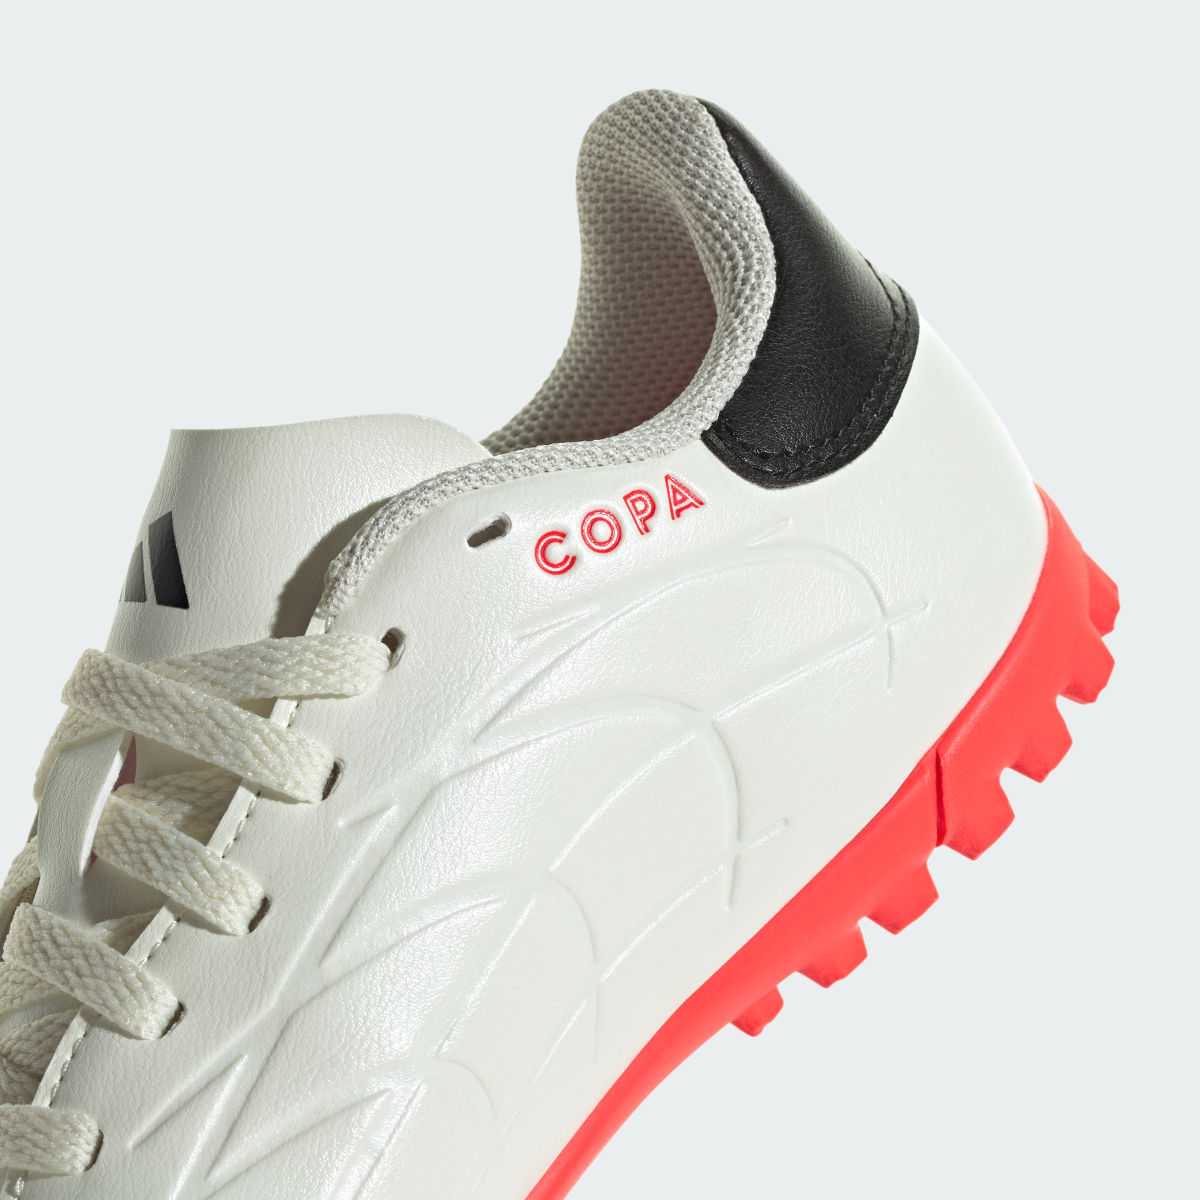 Adidas Copa Pure II Club Turf Boots. 9